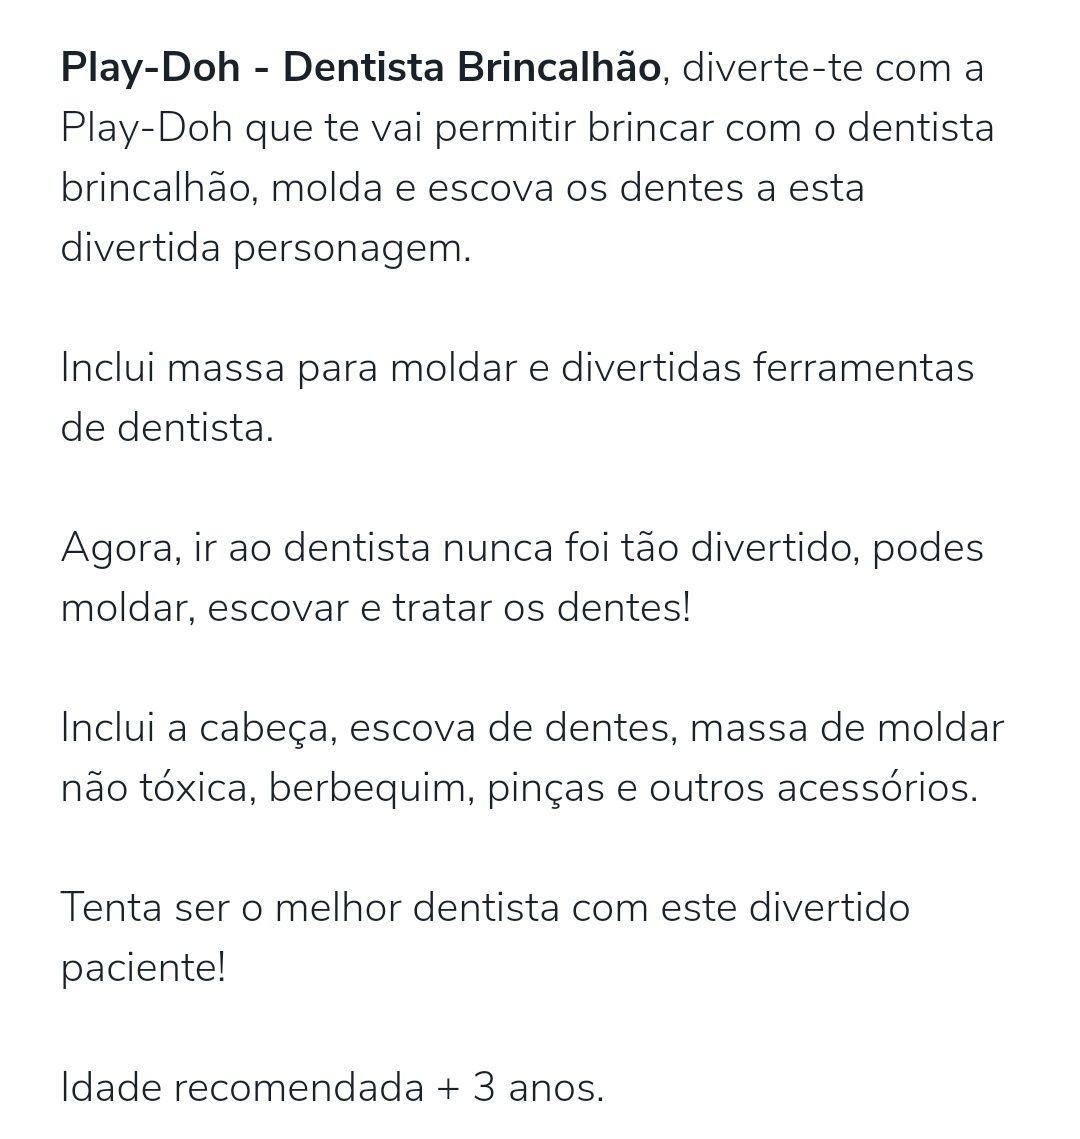 Play-doh dentista brincalhão